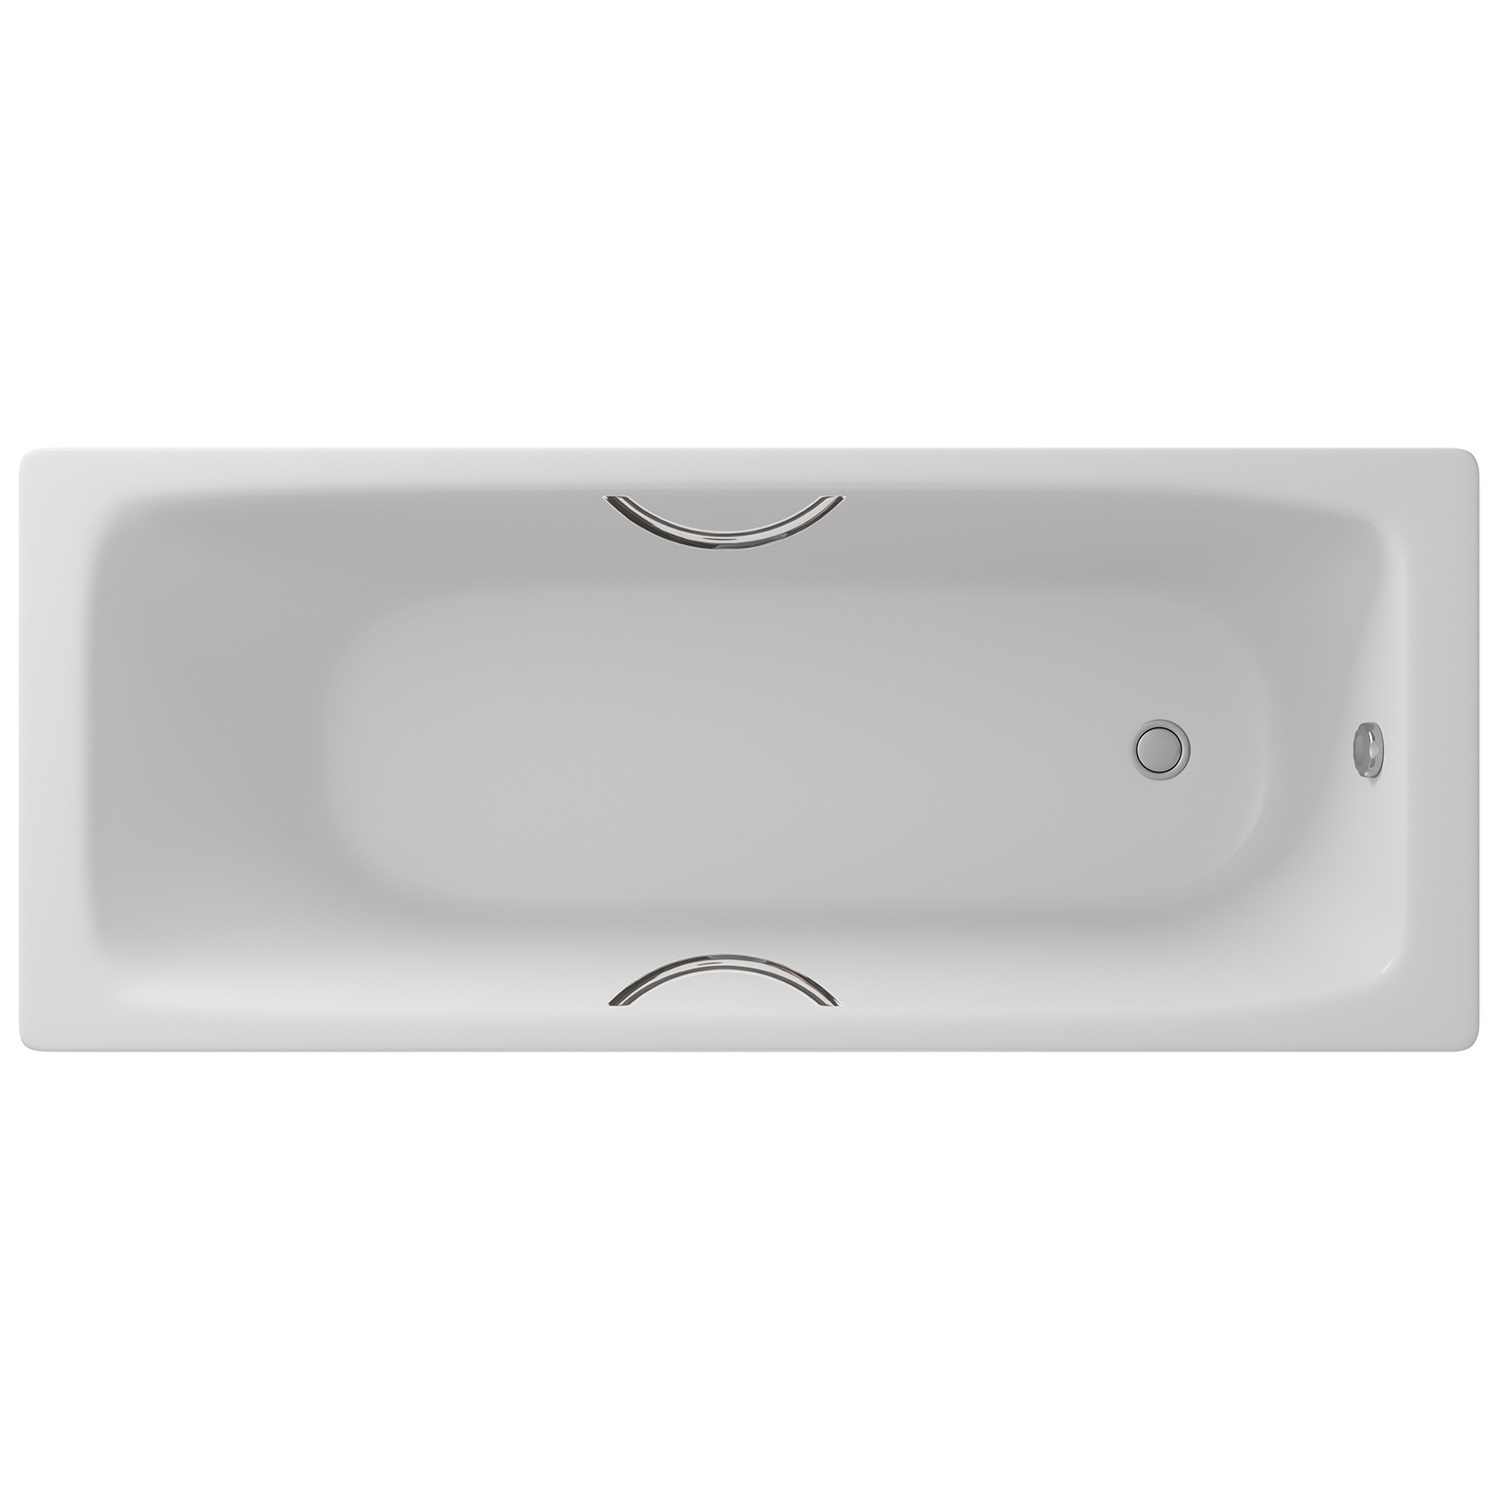 Чугунная ванна Delice Parallel 170х70 с ручками чугунная ванна delice aurora 170х70 dlr230605 as